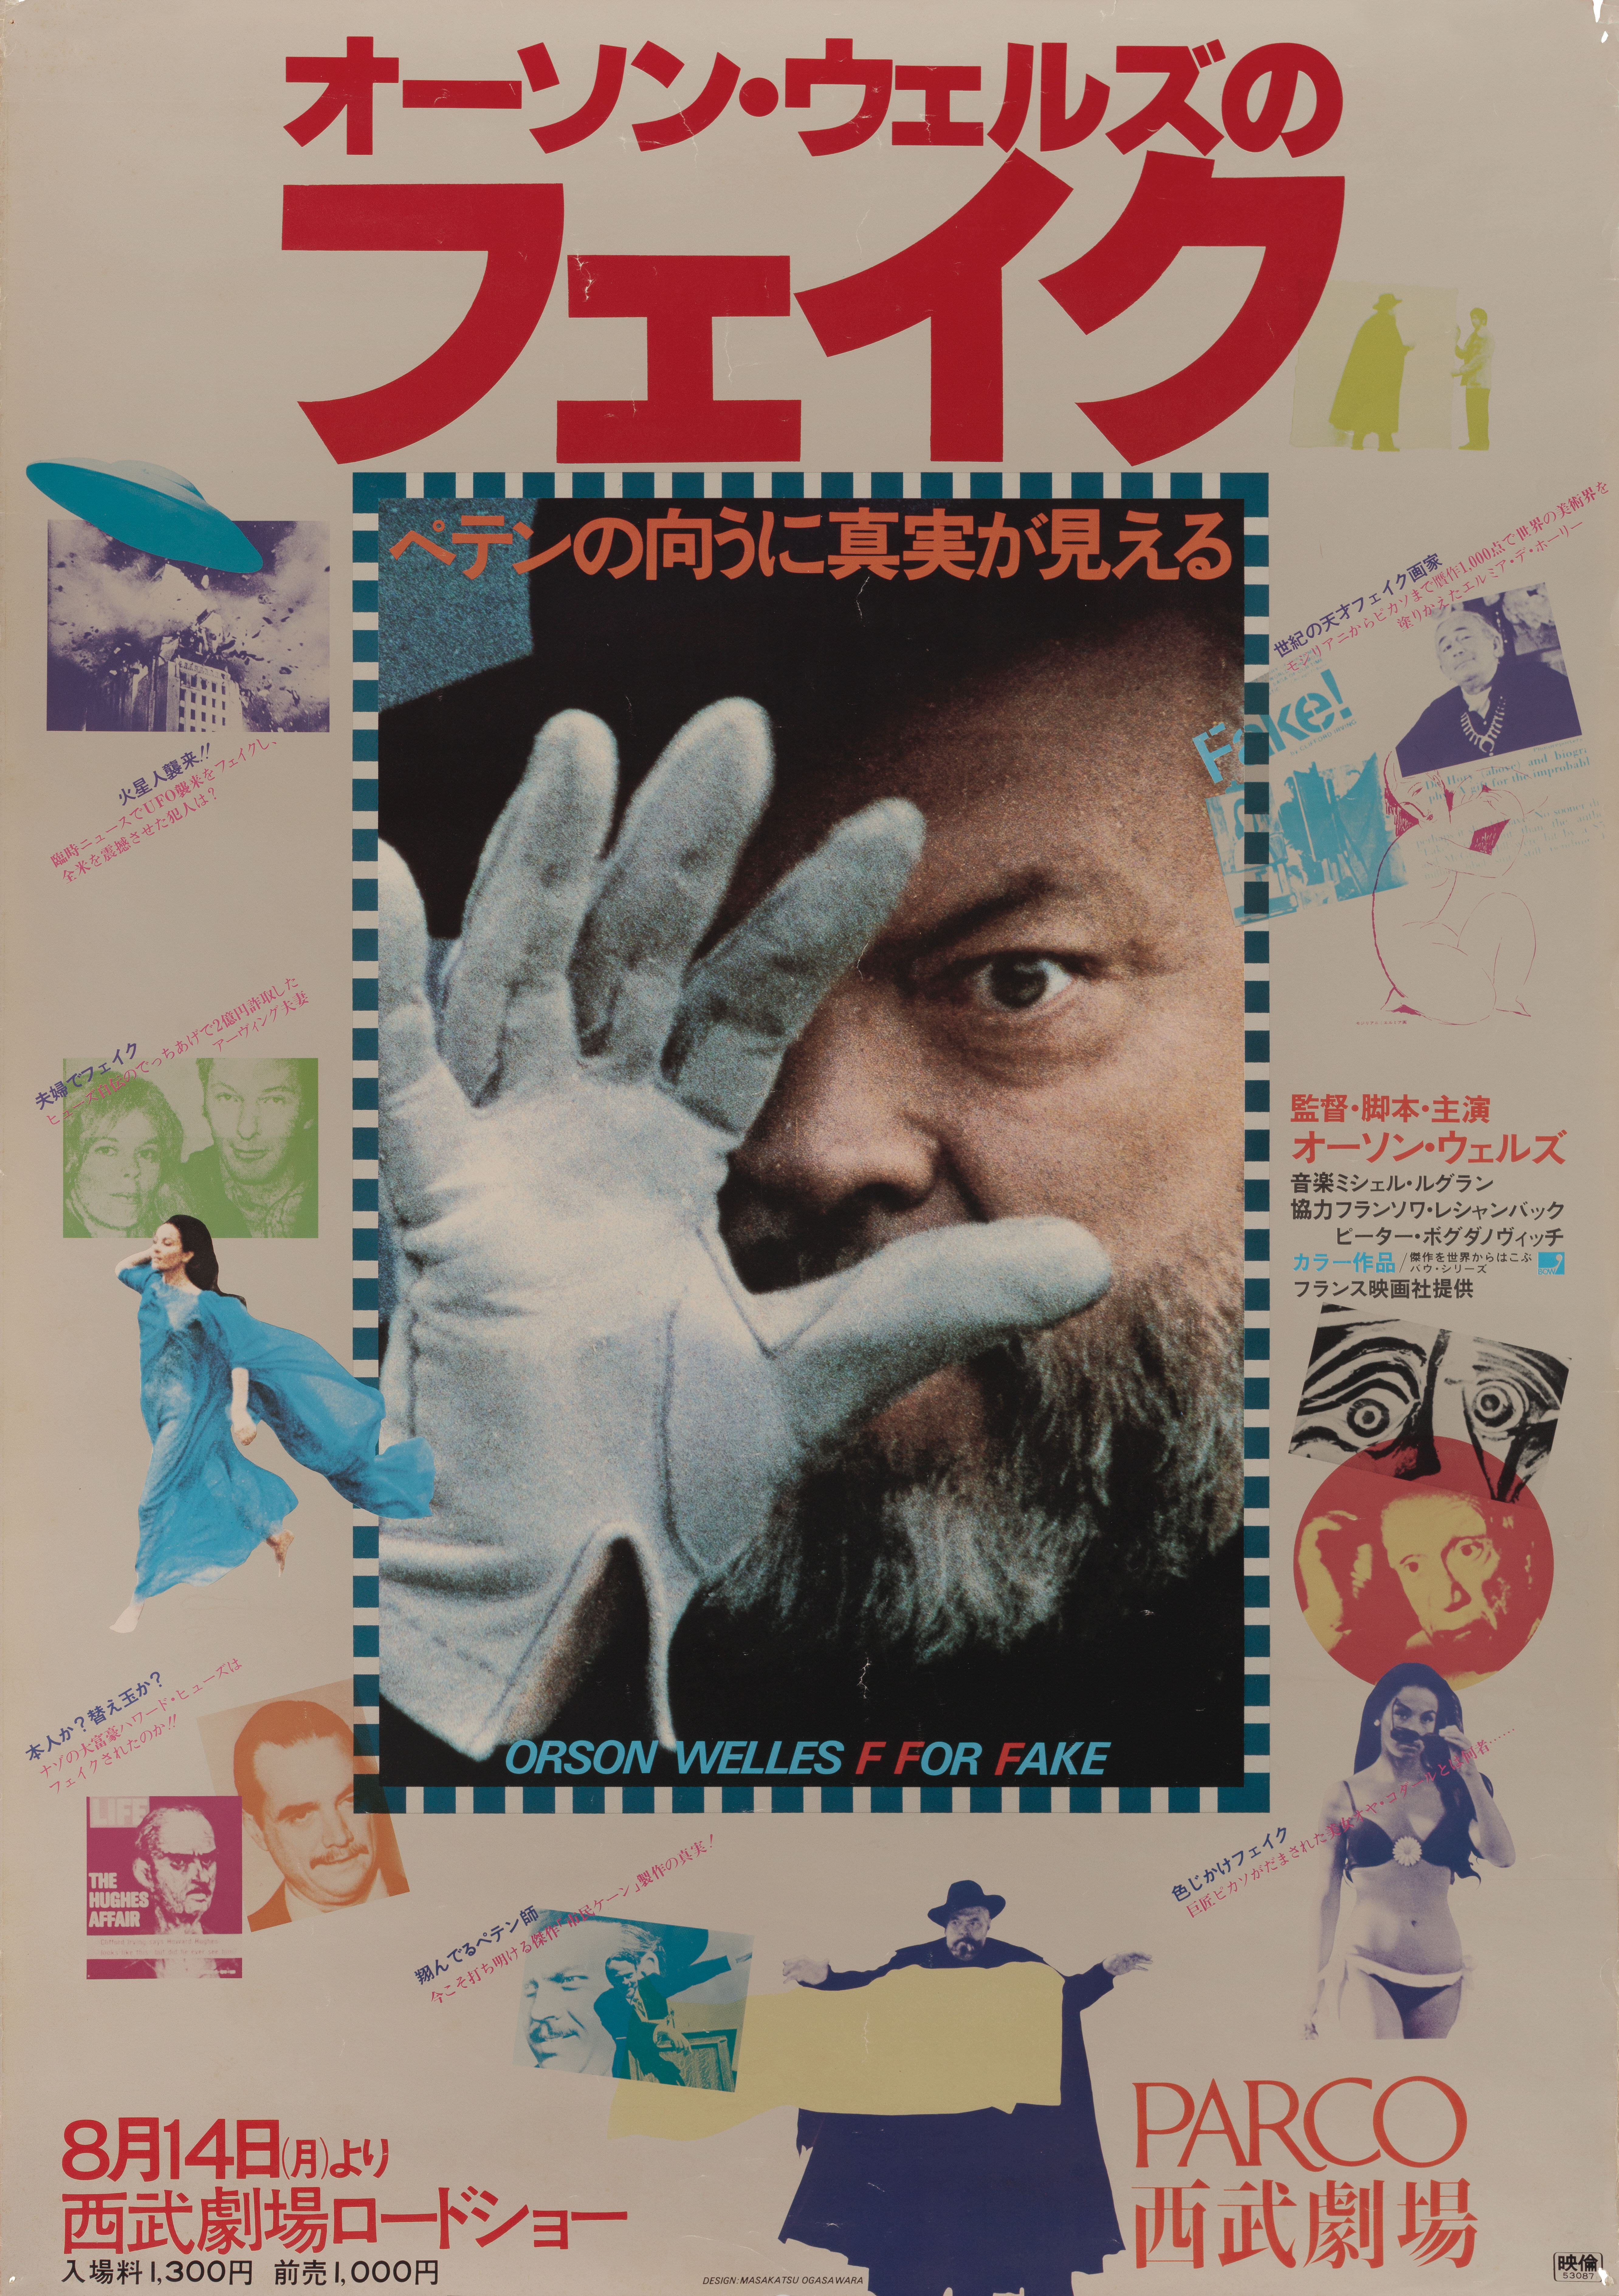 Фальшивка (F for Fake, 1973), режиссёр Орсон Уэллс, японский постер к фильму, художник Масакацу Огасавара (психоделическое искусство, 1978 год)